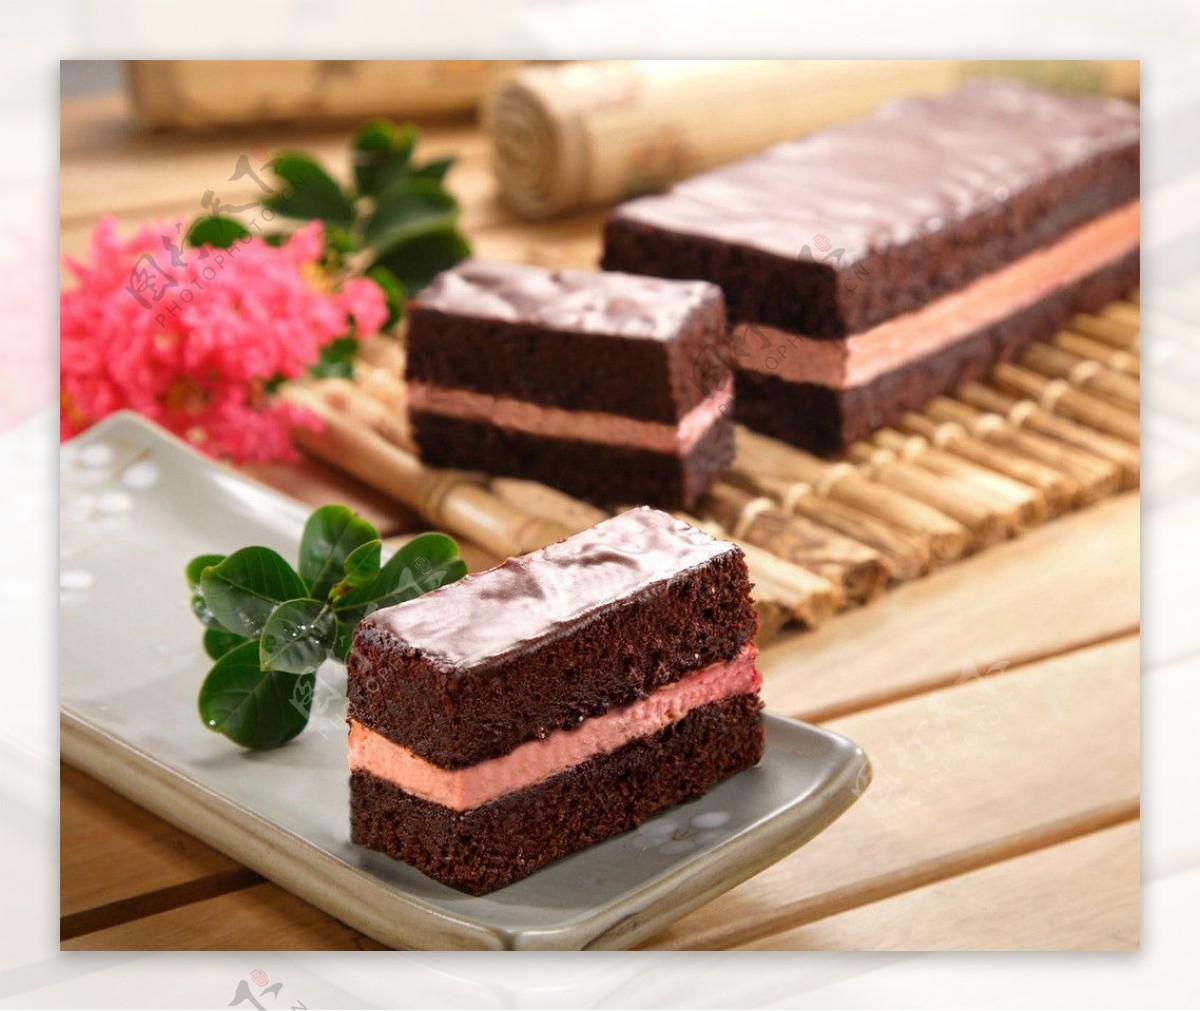 酒樱桃巧克力蛋糕图片